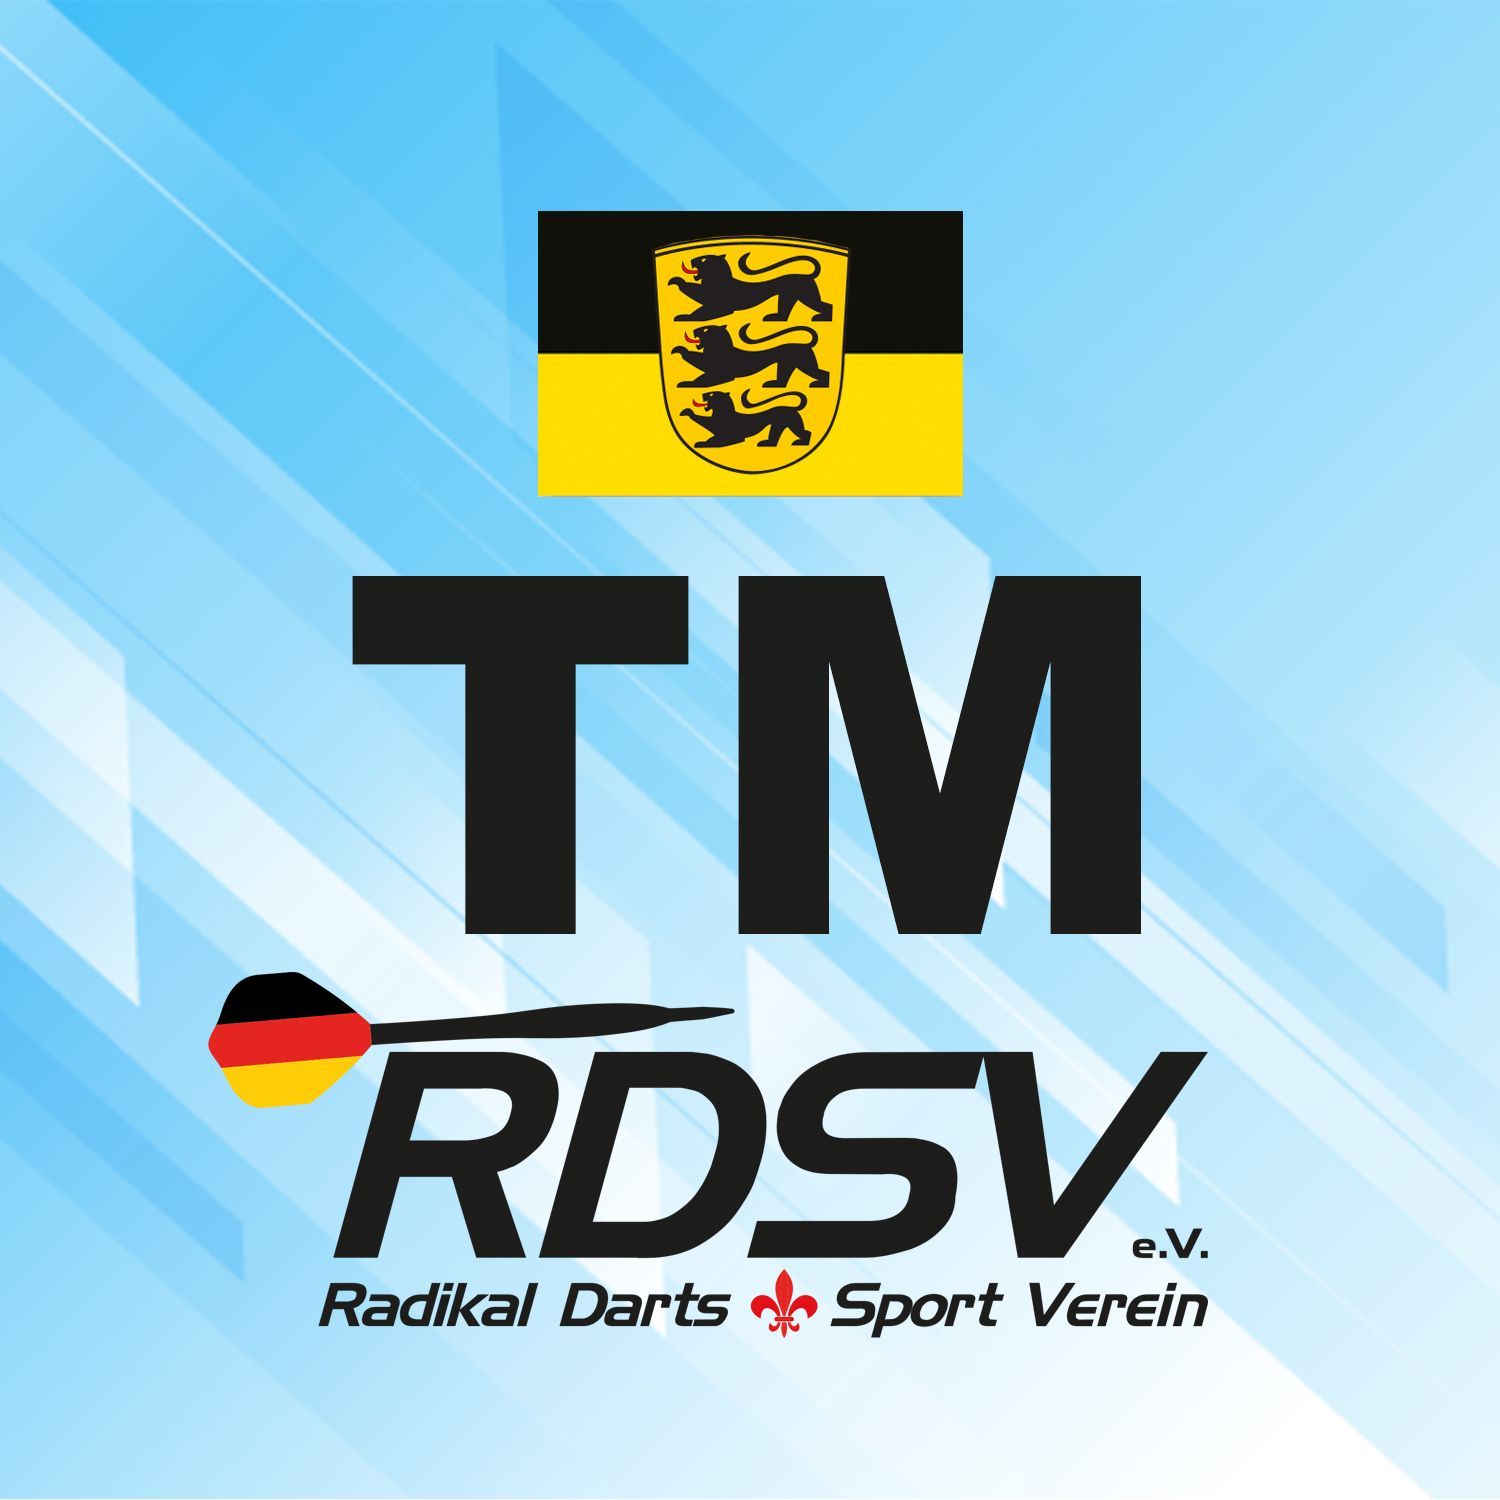 Baden-Württemberg | rdsvev.org (RDSV e.V.)